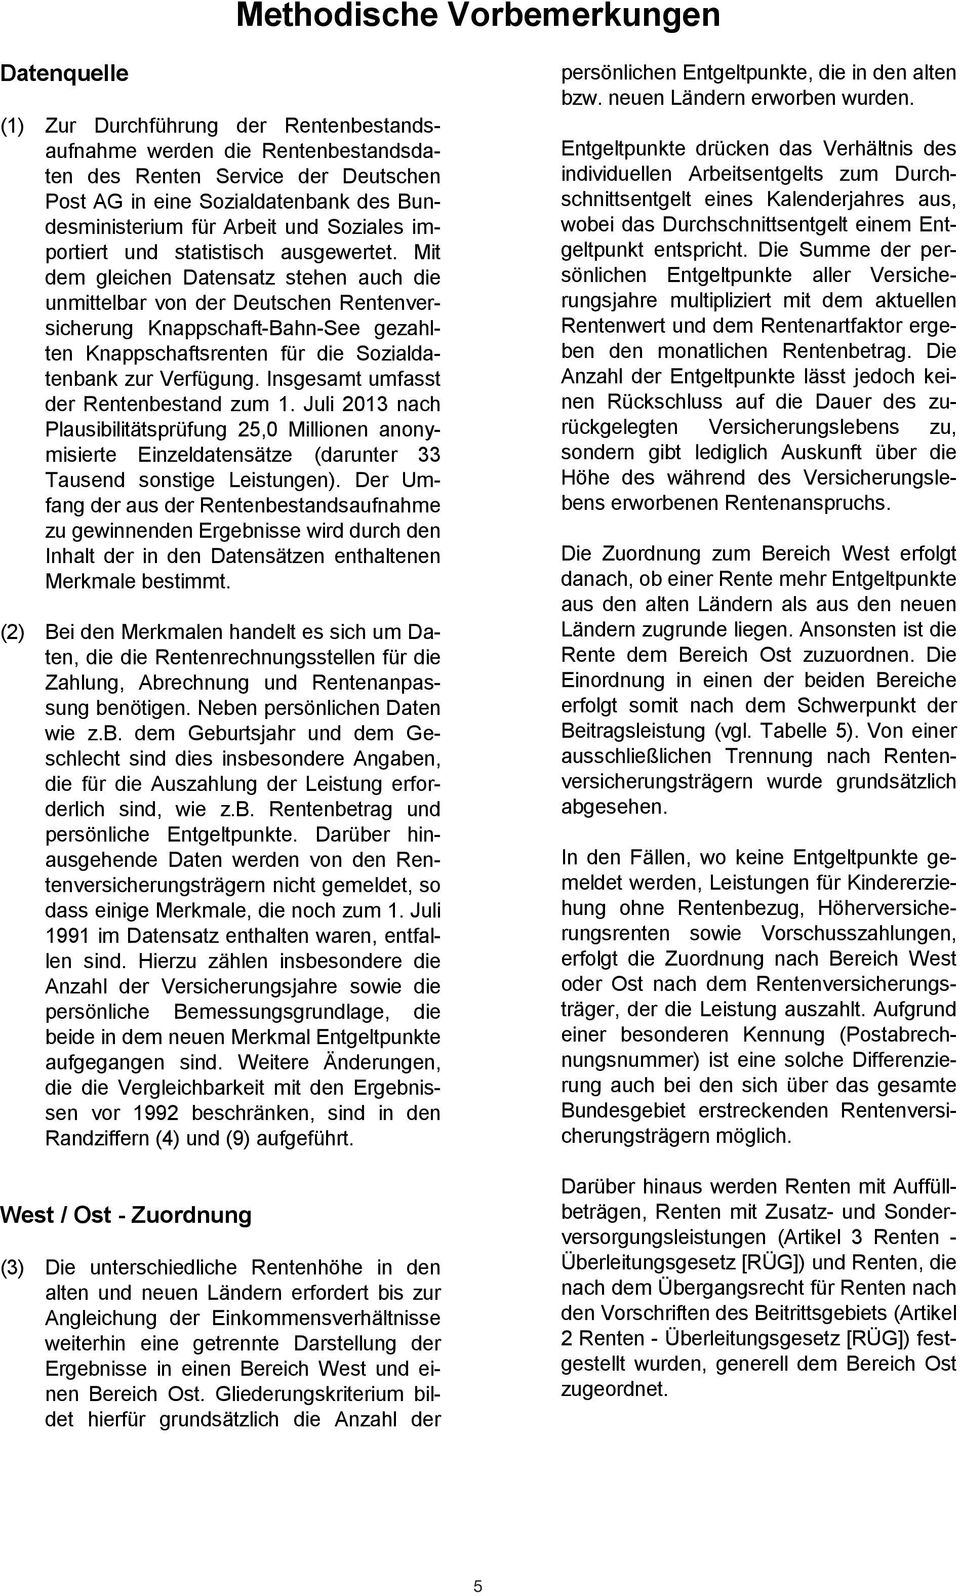 Mit unmittelbar von der Deutschen Knappschaft-Bahn-See gezahlten Knappschaftsrenten die Sozialdader Rentenbestand zum 1. Juli 2013 nach tenbank zur Verfügung.